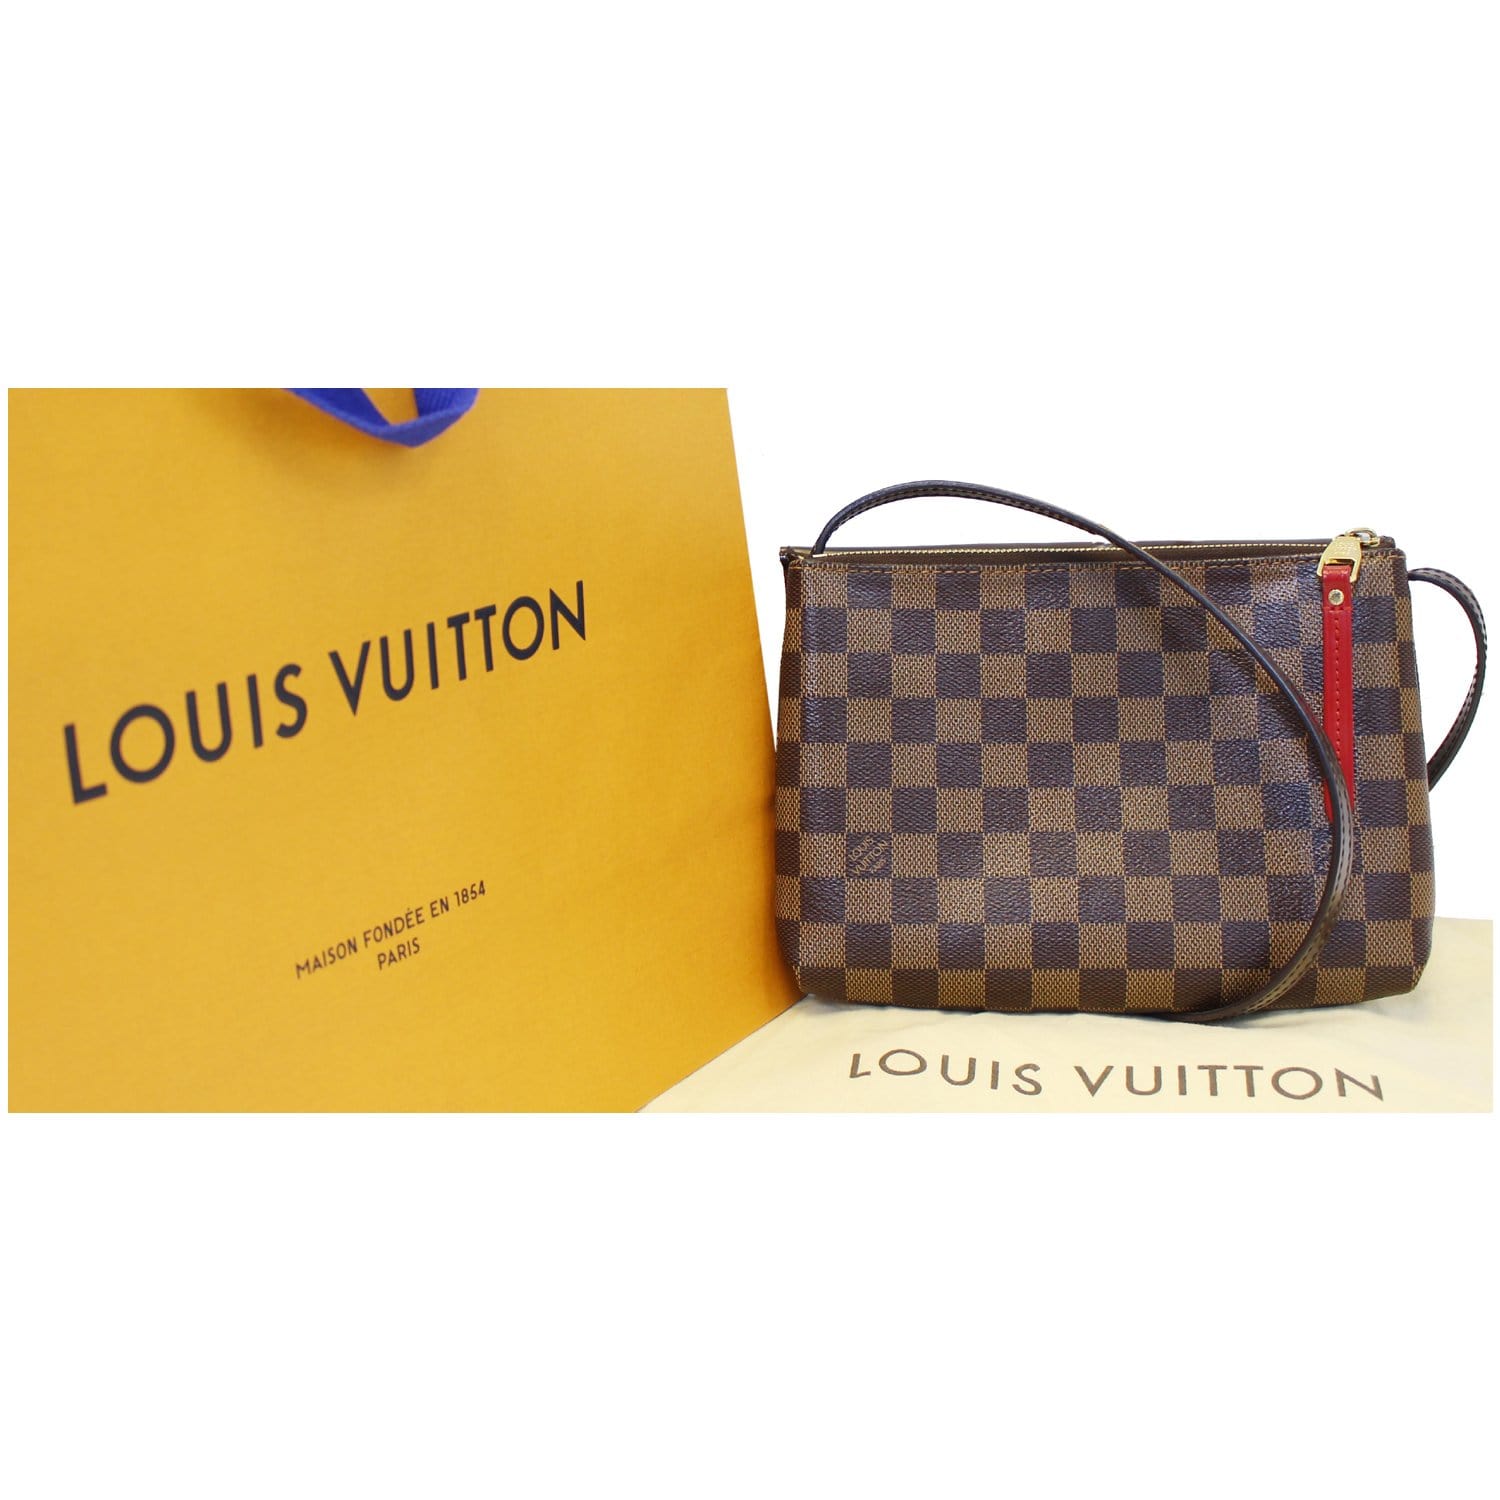 Đừng mua túi xách Louis Vuitton Twist cho đến khi bạn đọc bài viết